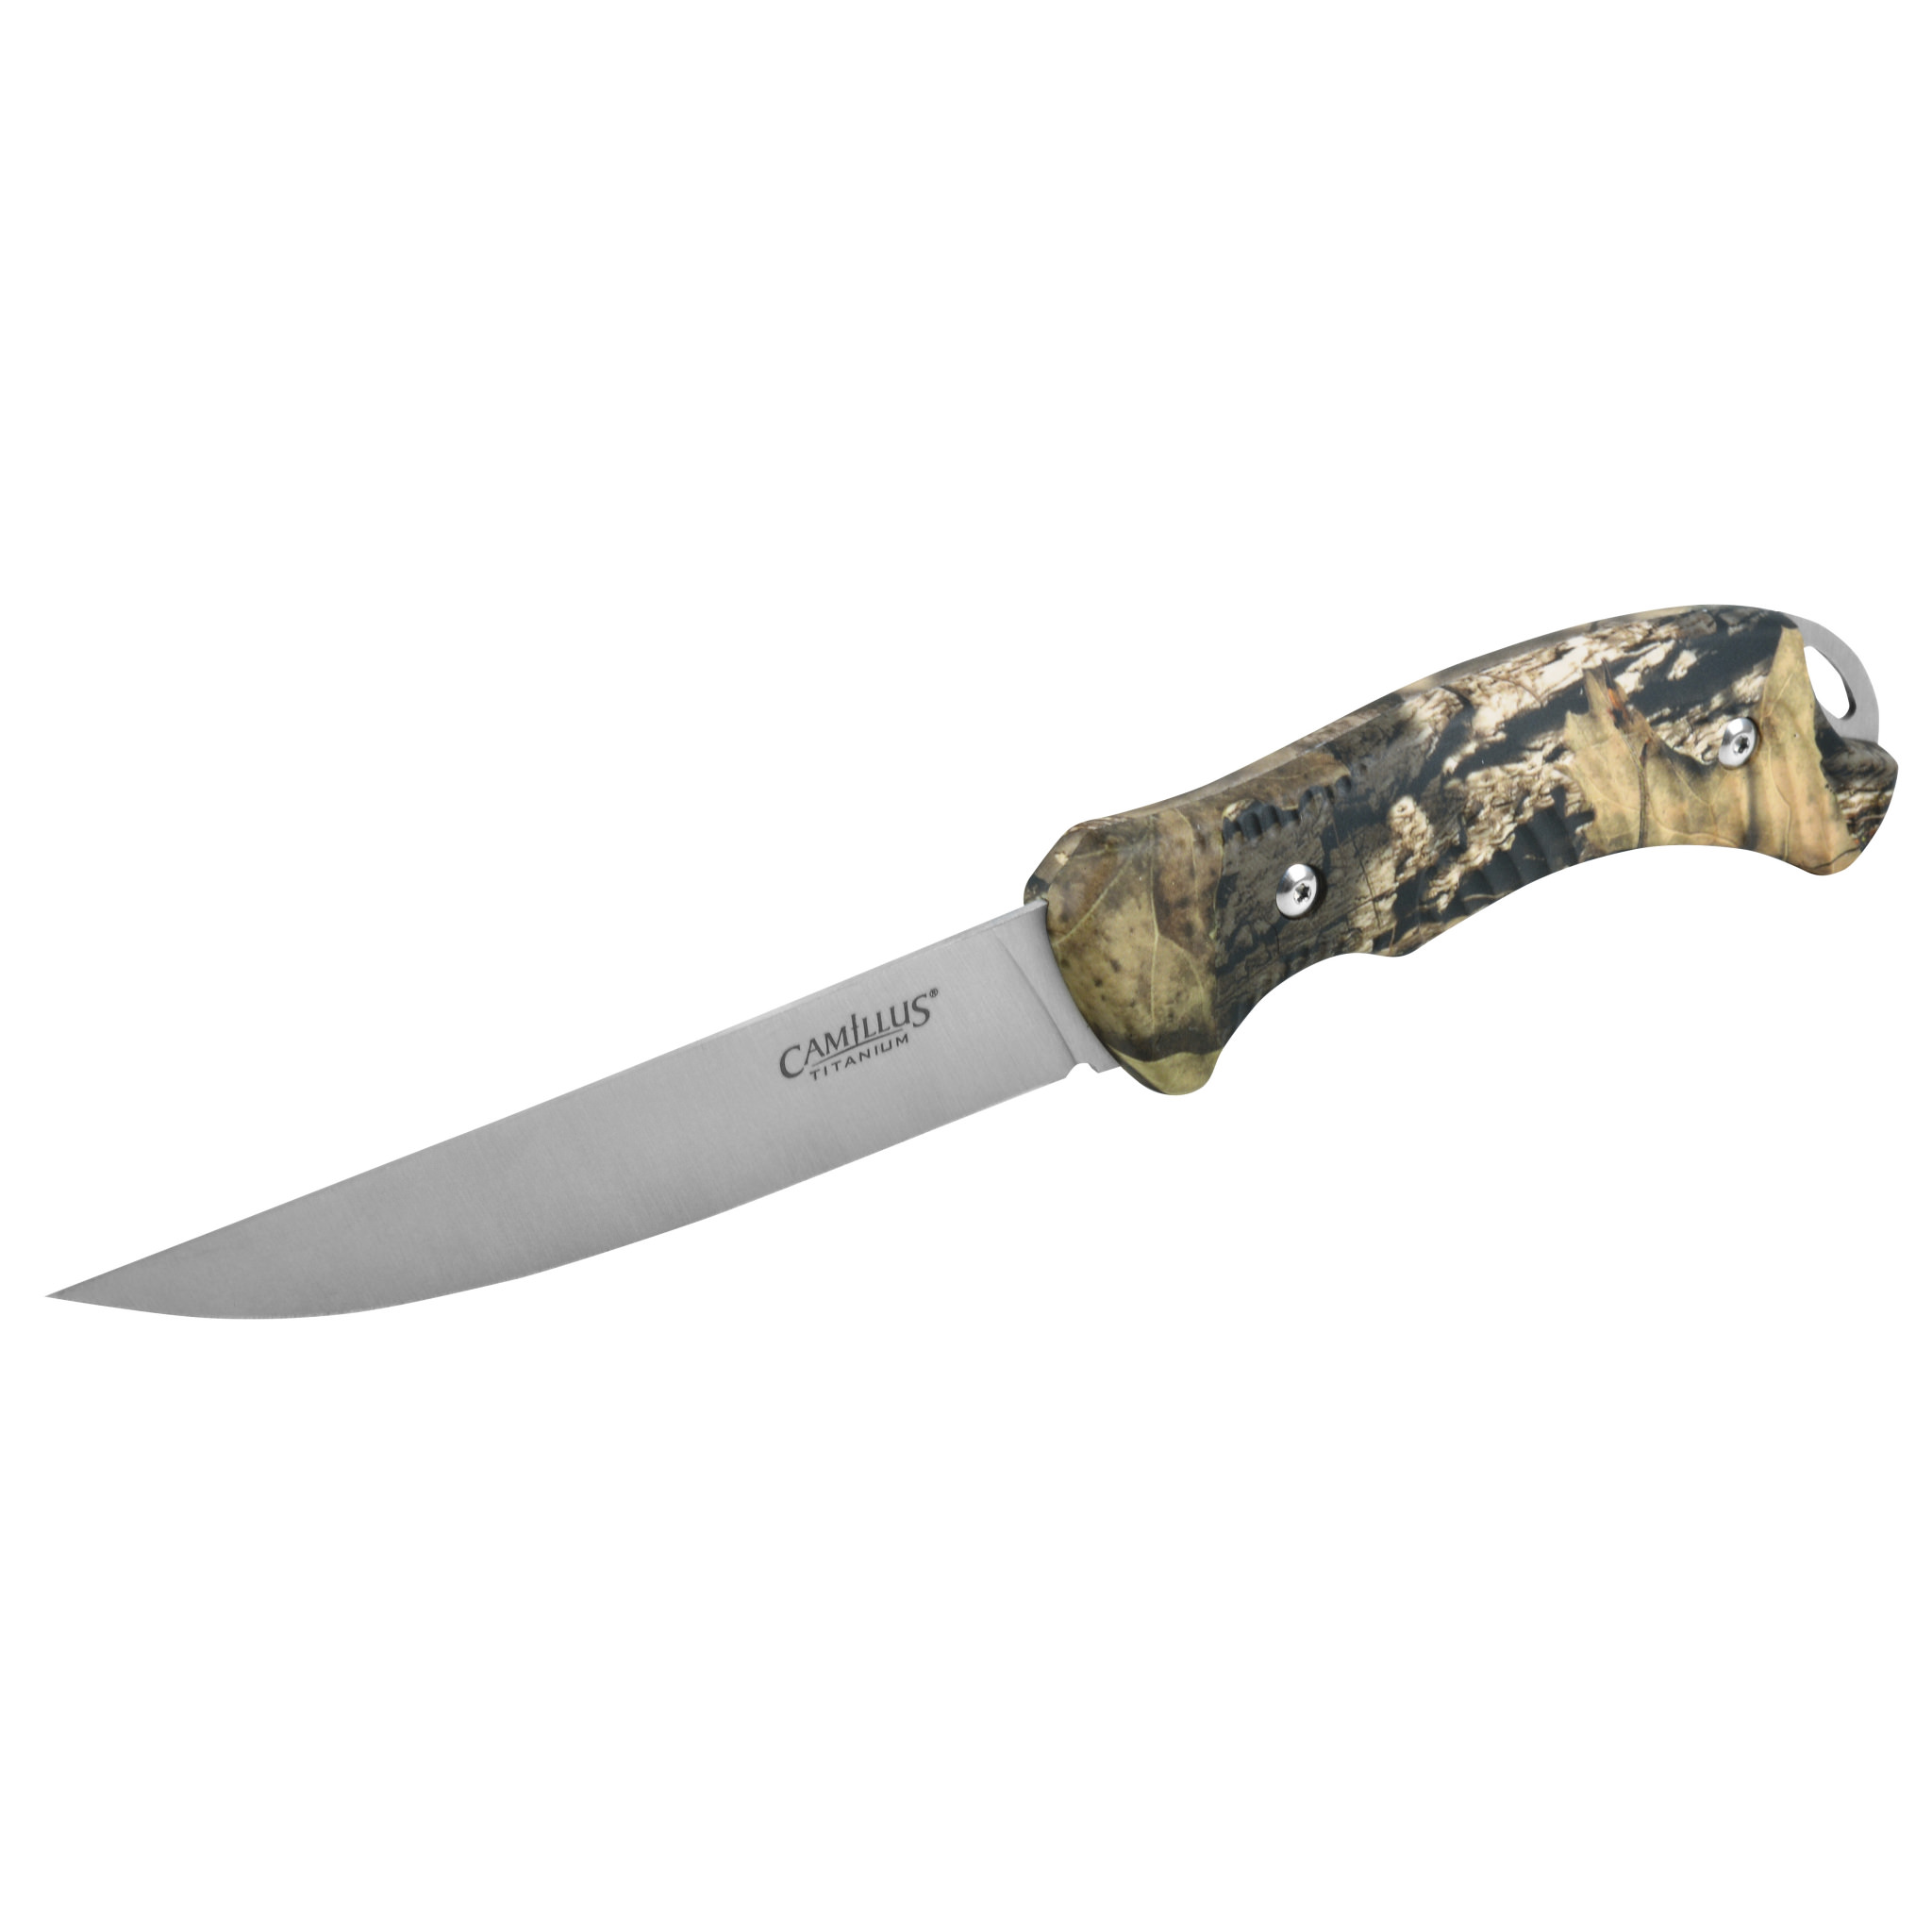 Camillus 10" Boning Knife, 5" Blade, Titanium Bonded, Mossy Oak with Lanyard Hole and Sheath - image 1 of 6